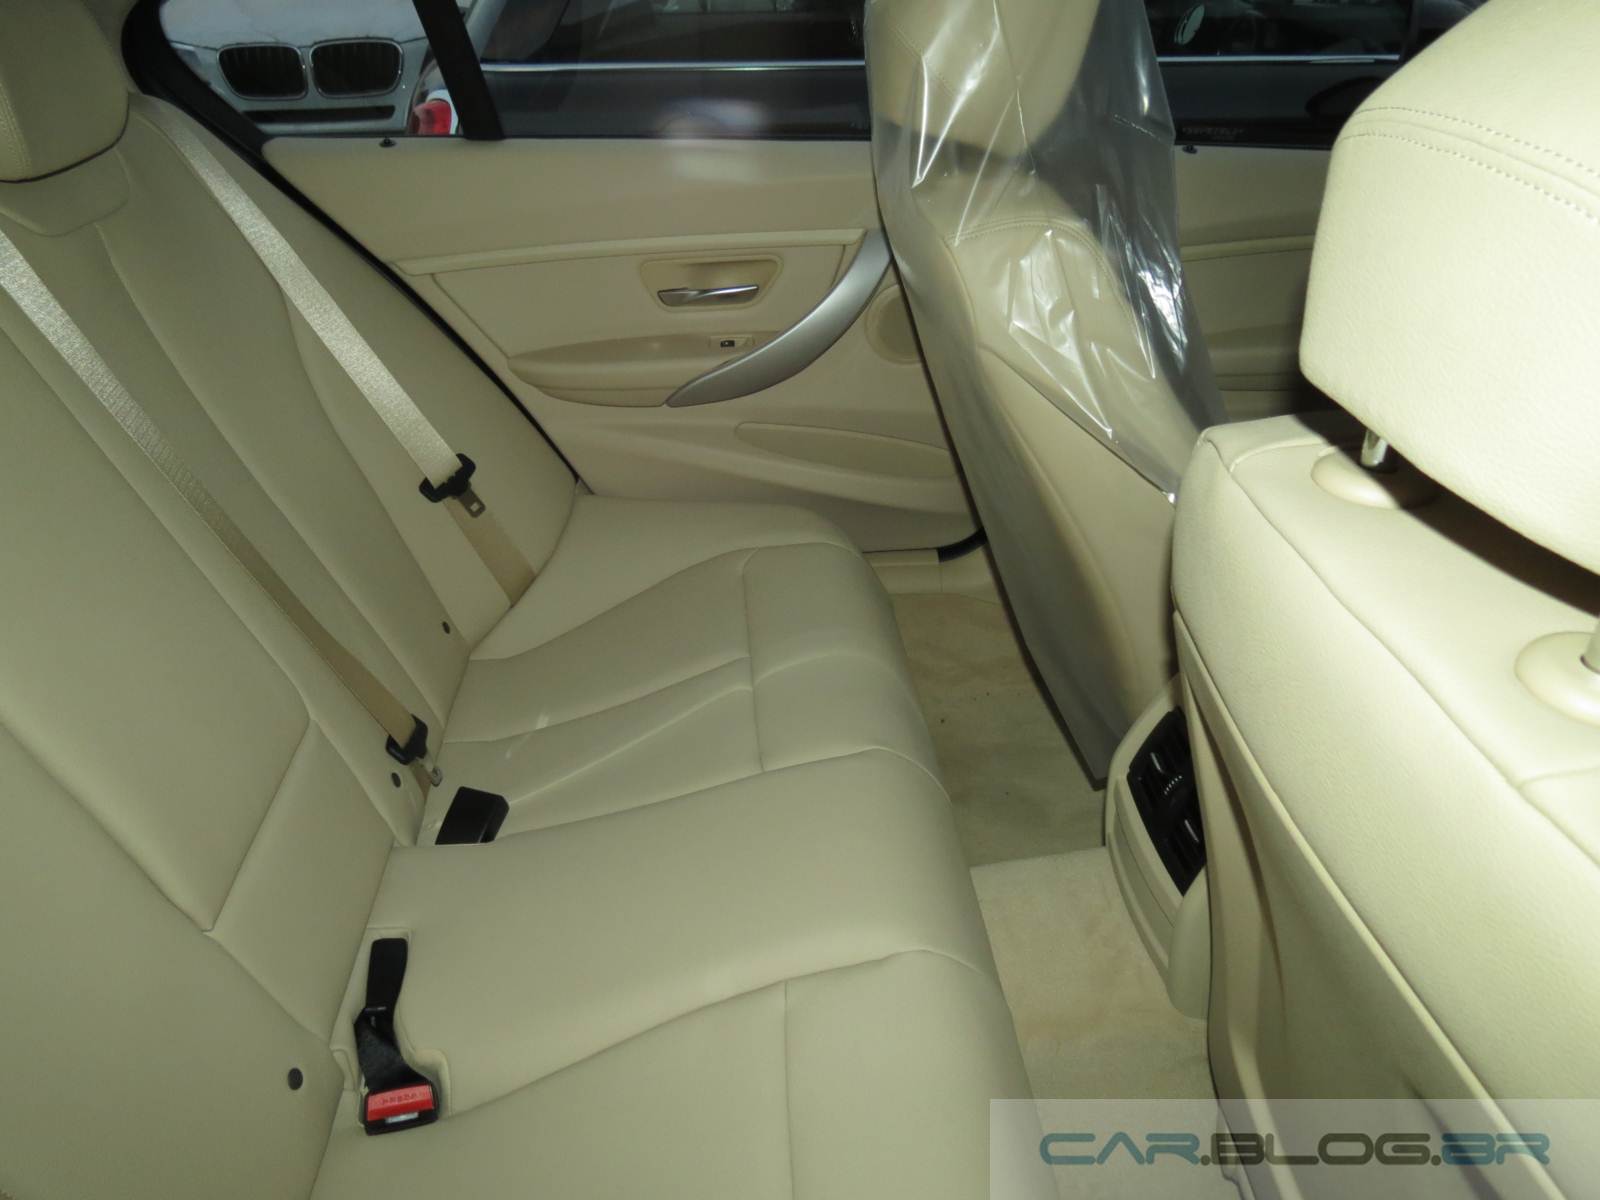 BMW 316i 2015 - interior